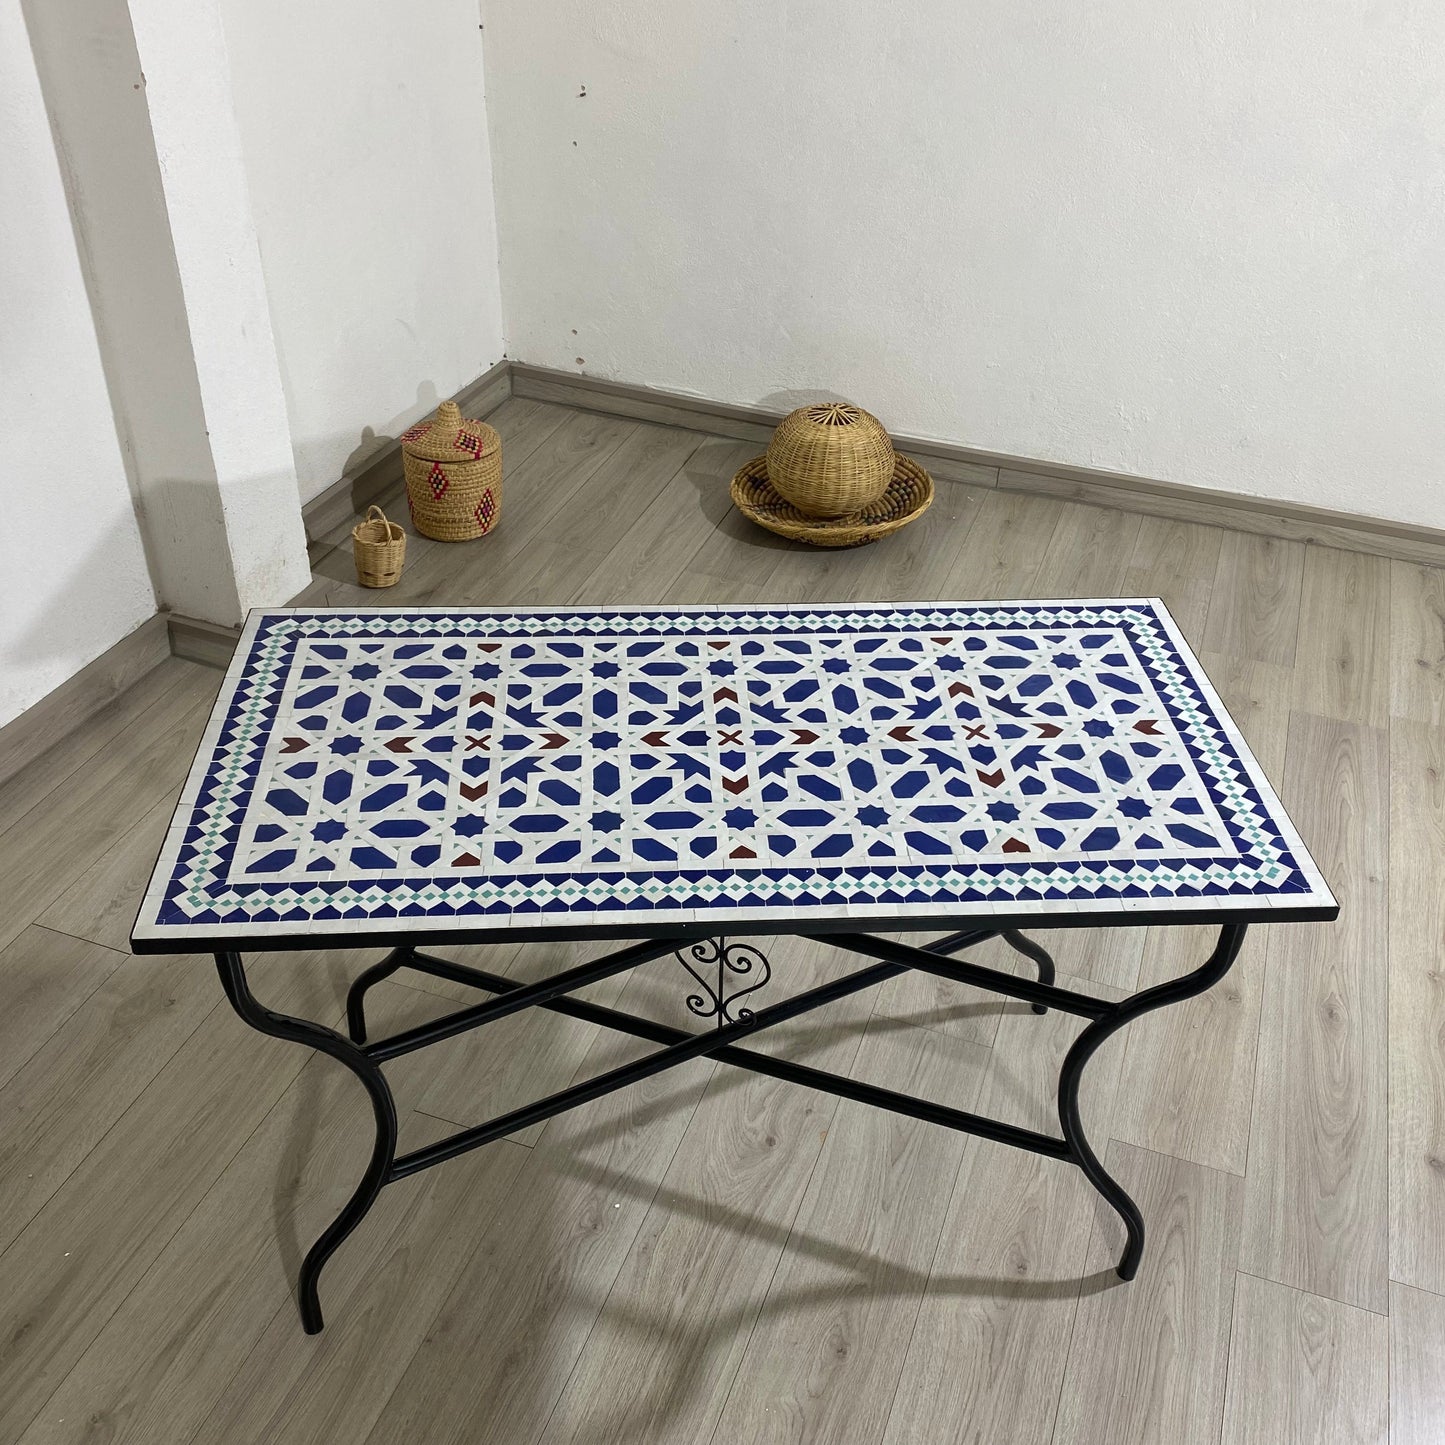 Table à manger en mosaïque, table extérieure/intérieure en mosaïque de Marrakech 100% artisanale, Table en mosaïque du milieu du siècle, Grande table en mosaïque